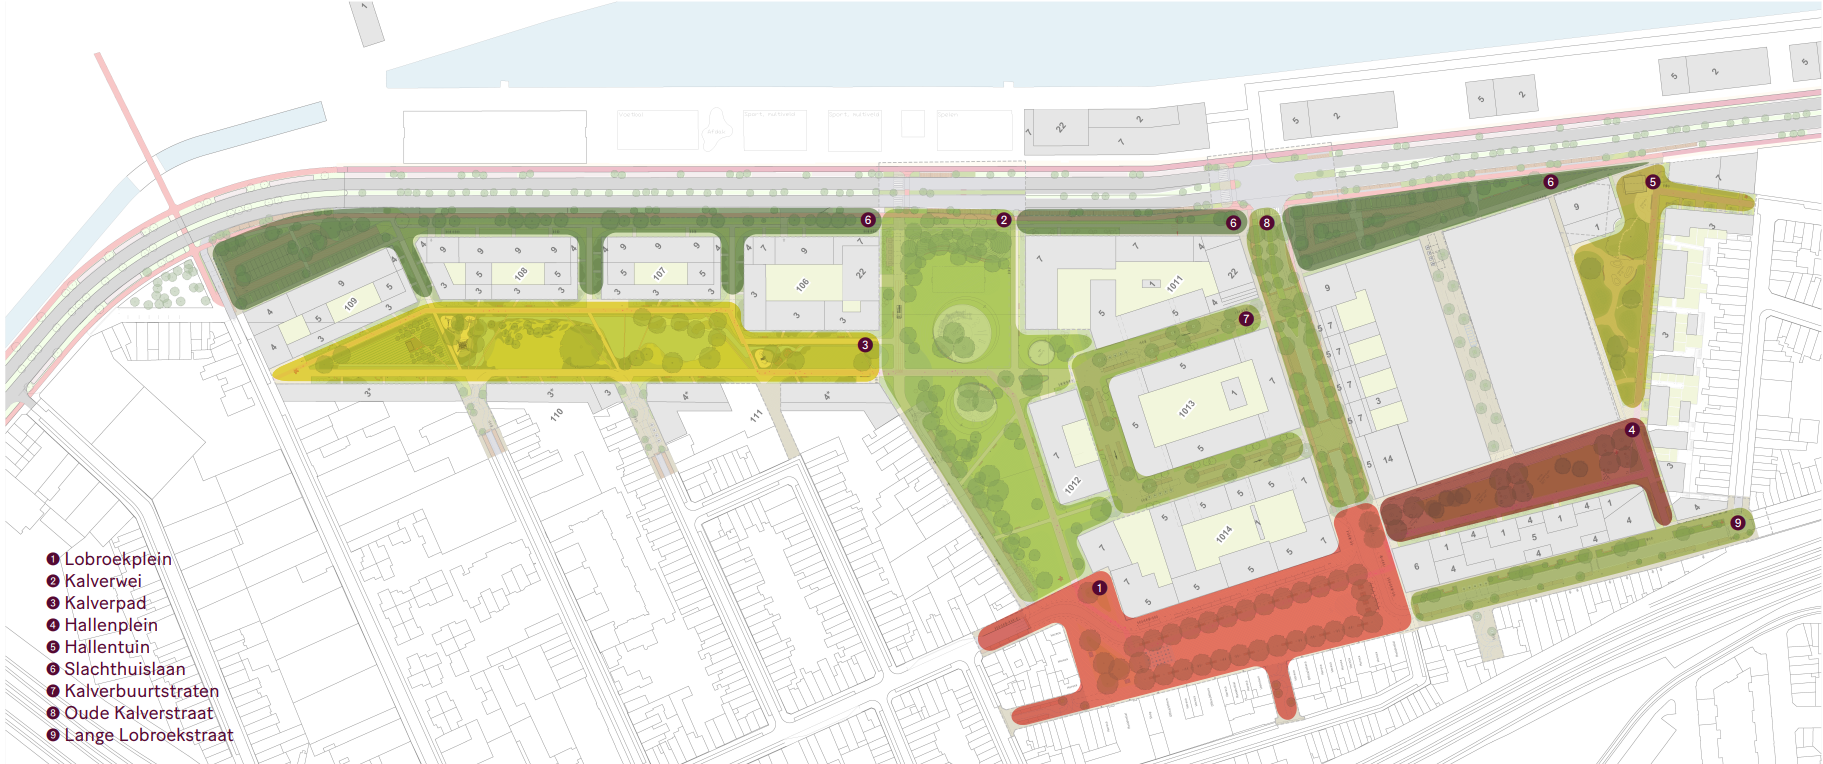 Een overzichtsplan van het voorontwerp van de publieke ruimte van de Slachthuiswijk, met de verschillende deelruimten erop aangeduid